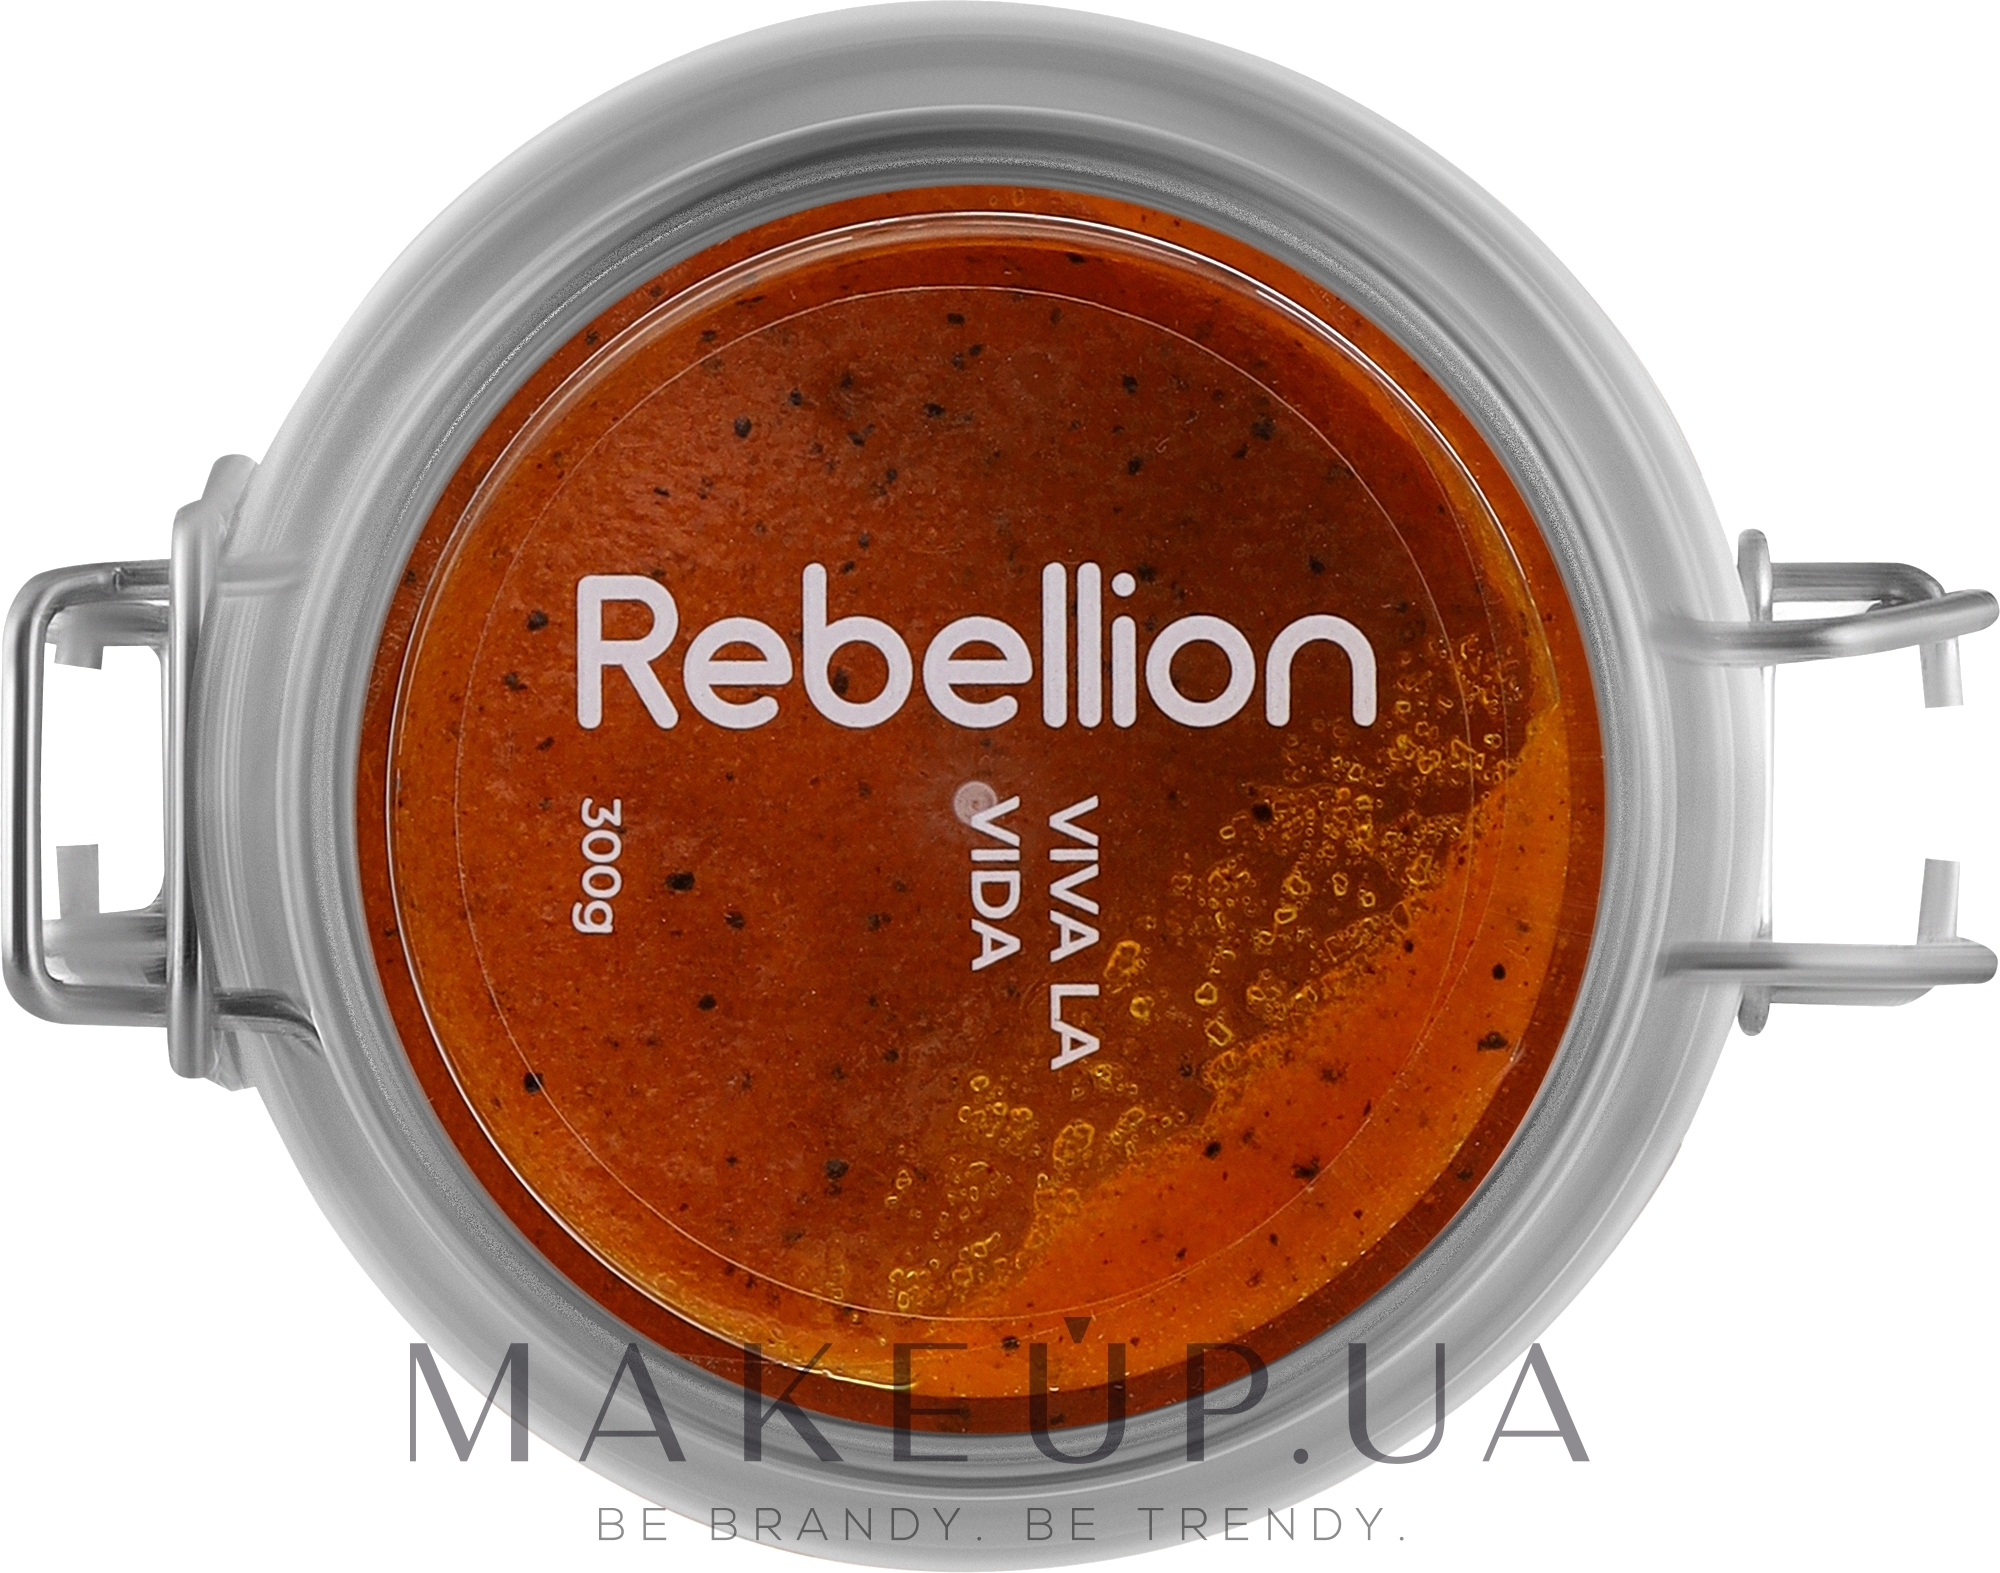 Rebellion Viva La Vida - Парфюмированный скраб для тела — фото 300g